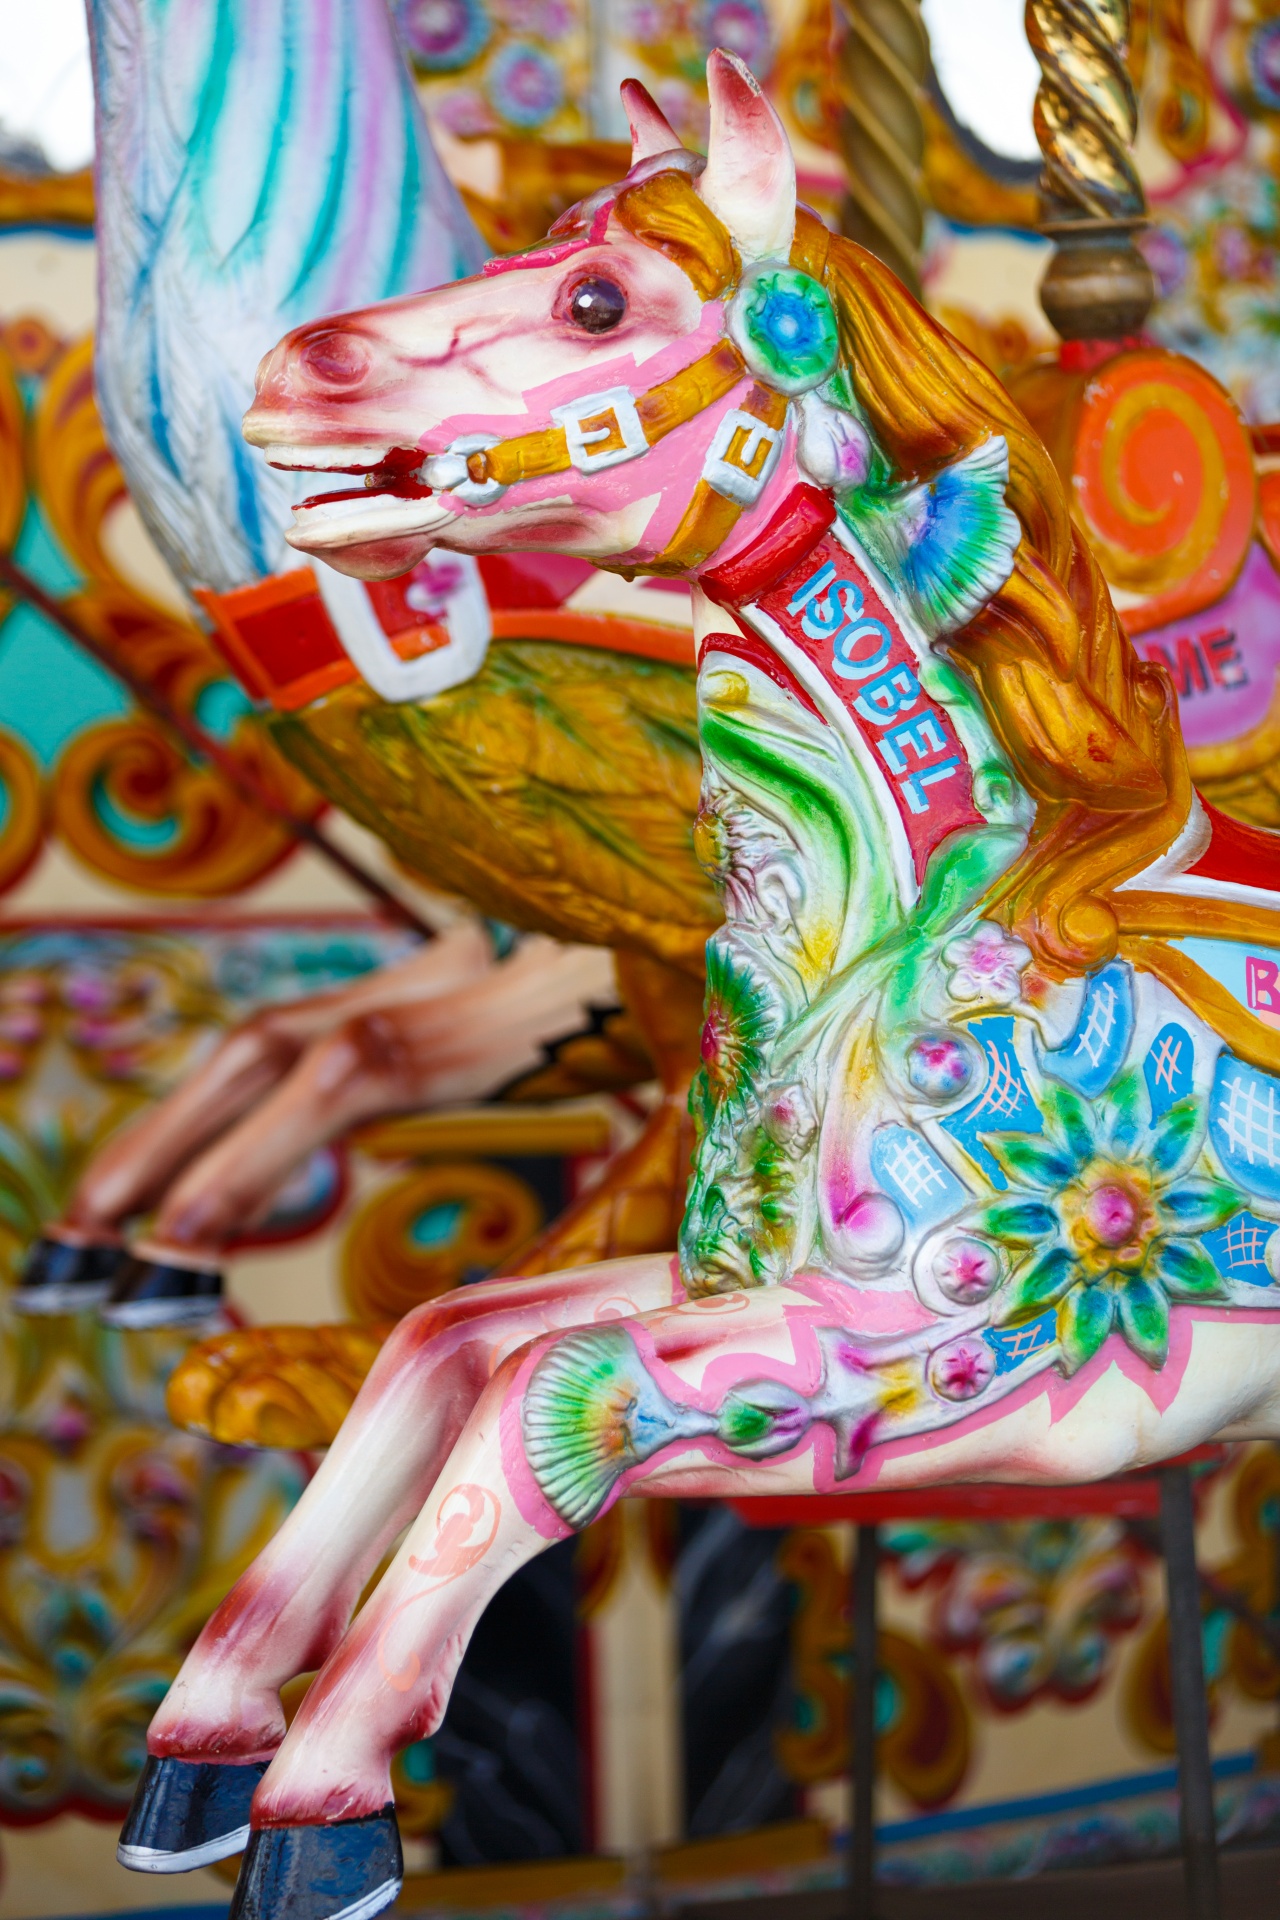 旋转木马与马。 矢量插图。 五颜六色的儿童旋转木马. 库存矢量图（免版税）576513226 | Shutterstock